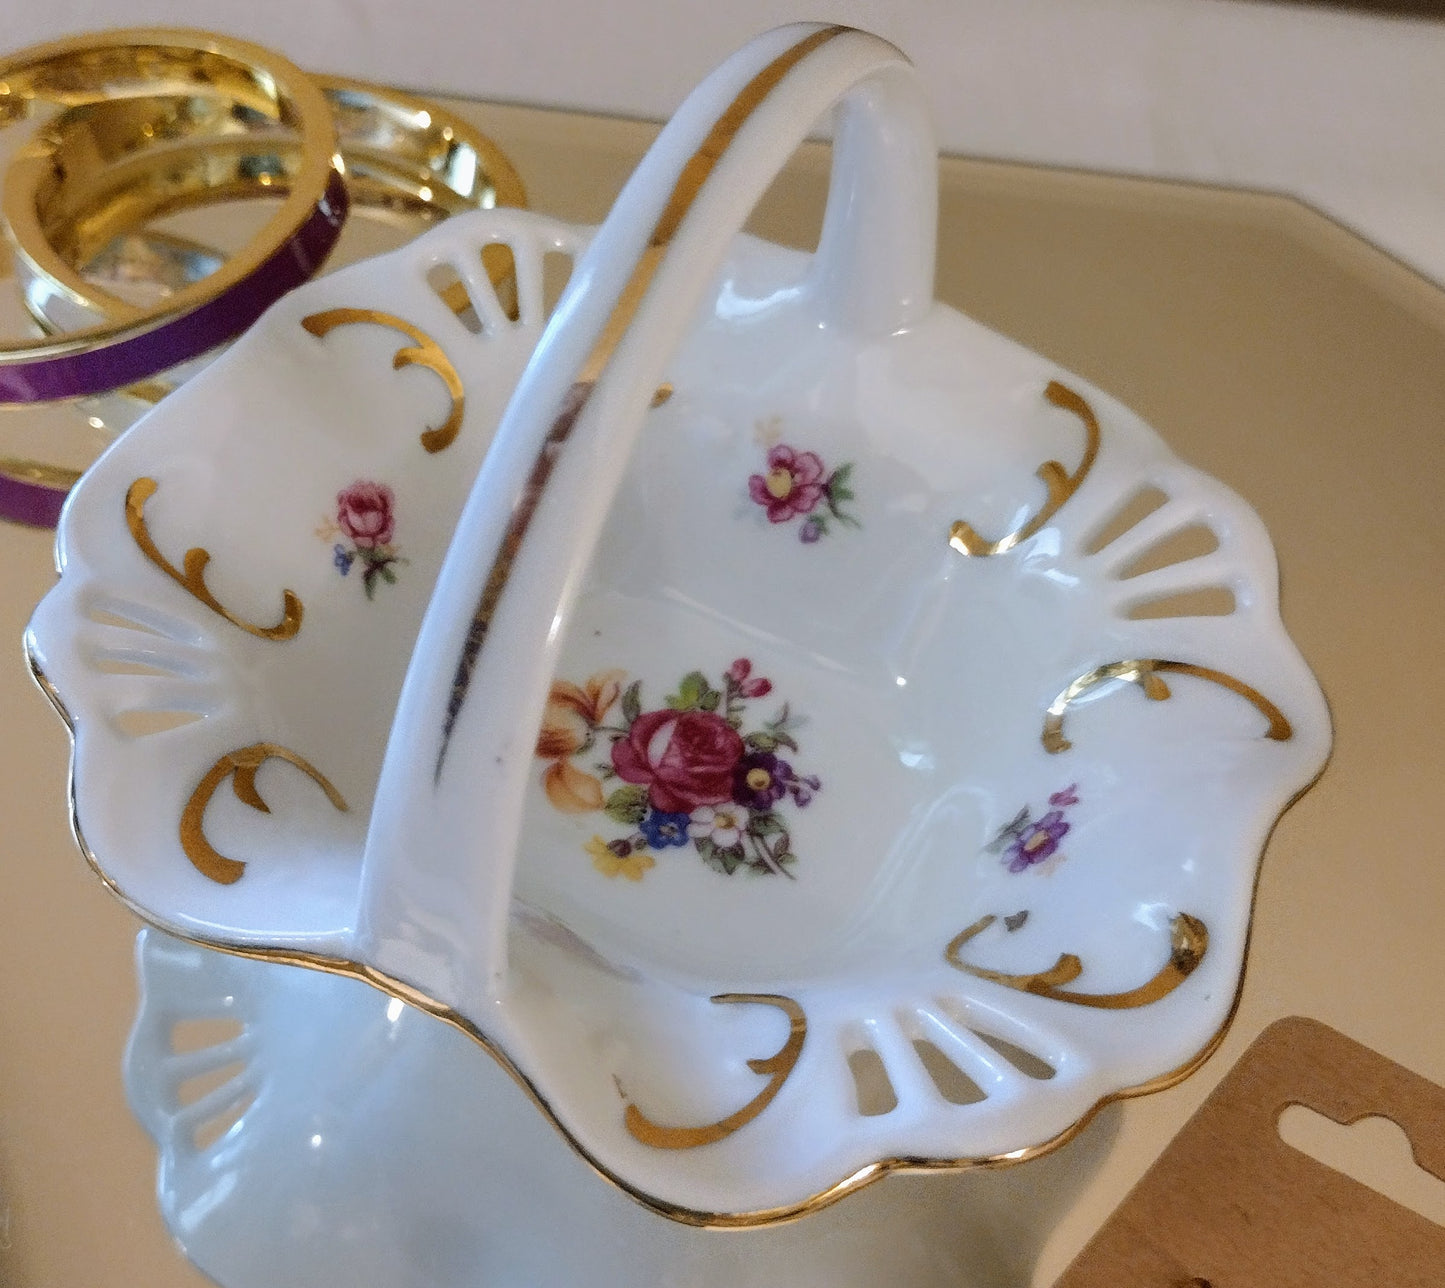 German Made PM Porcelain Trinket Basket - Floral Design (Made in Germany)